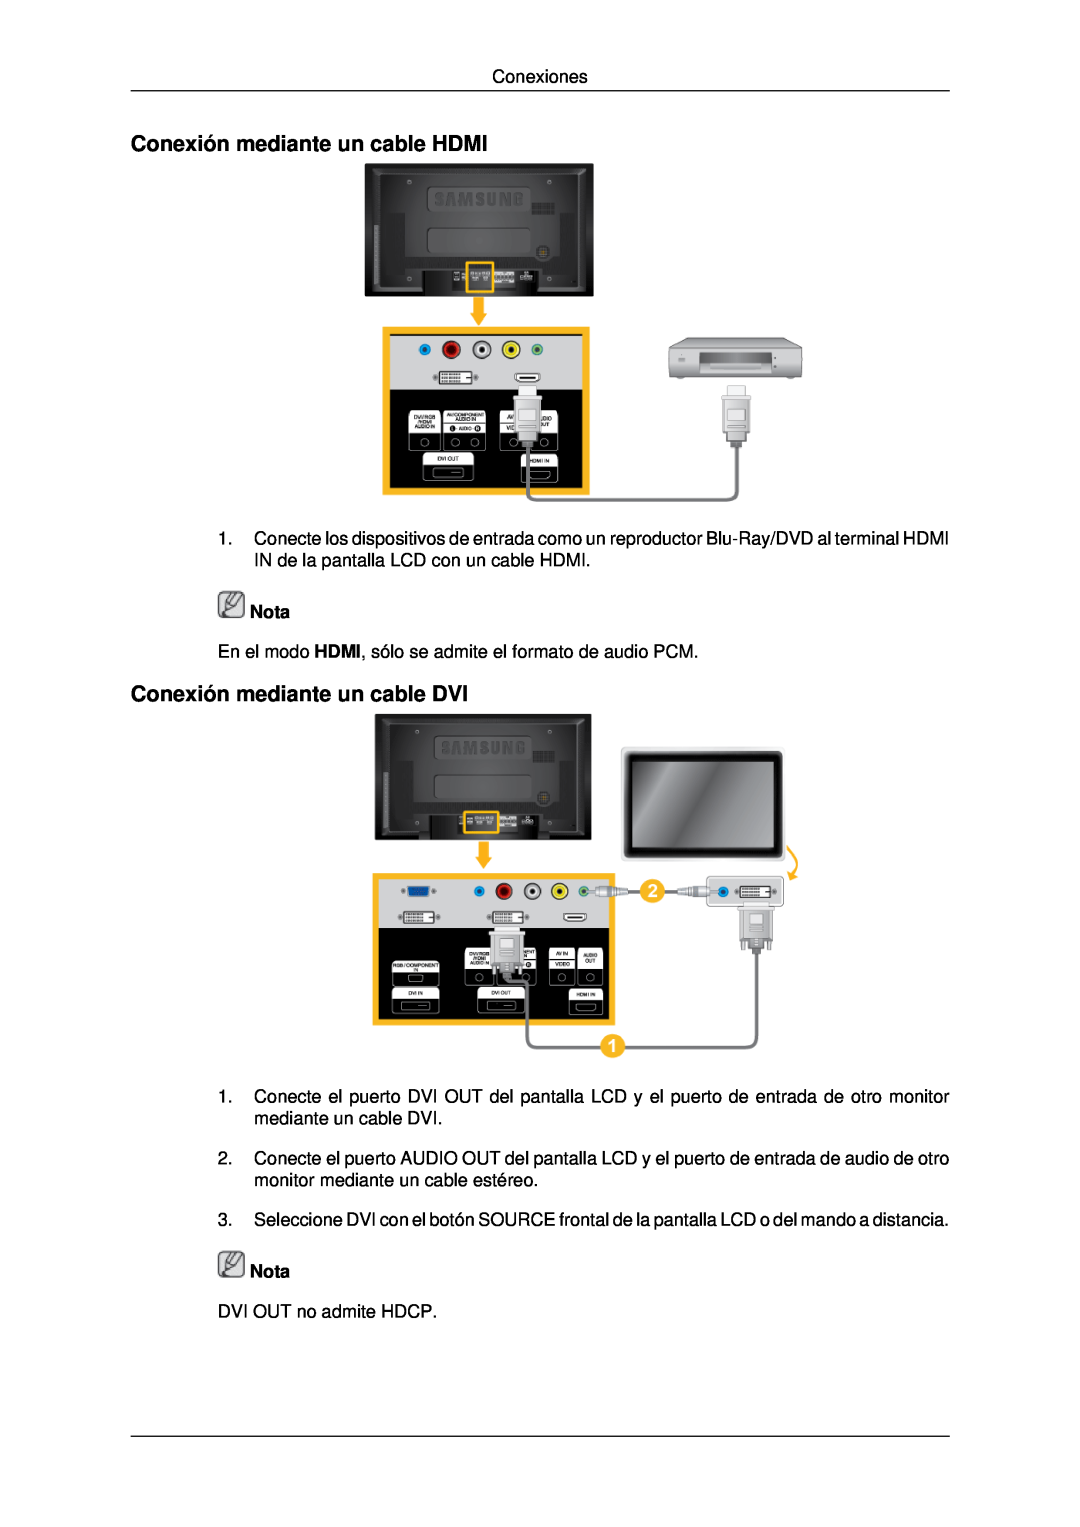 Samsung LH40MRTLBC/EN, LH46MRPLBF/EN, LH40MRPLBF/EN Conexión mediante un cable HDMI, Conexión mediante un cable DVI, Nota 